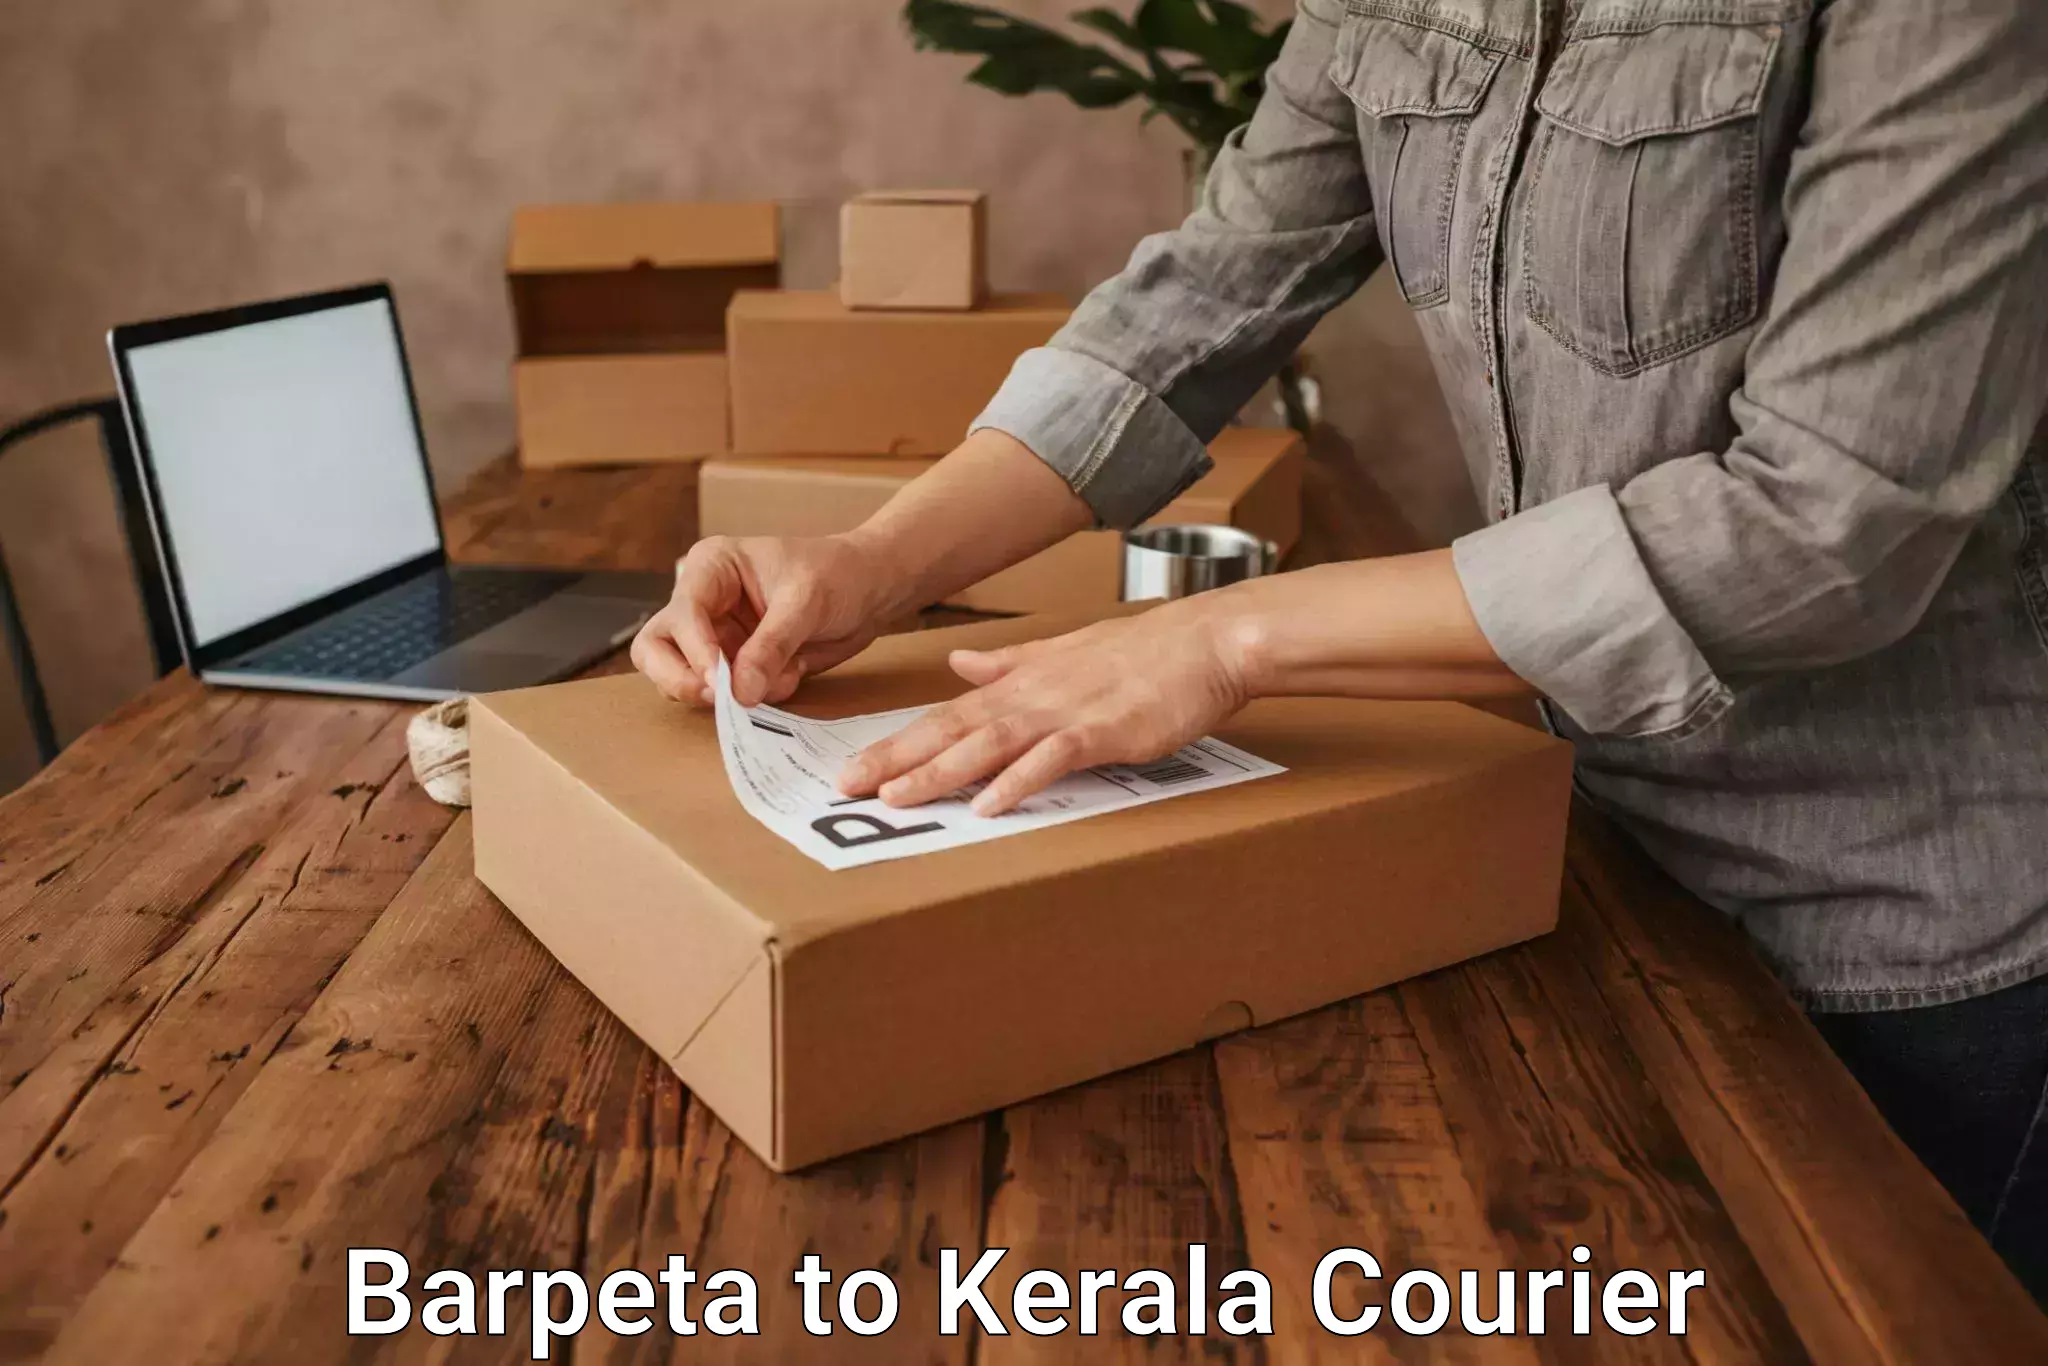 High-priority parcel service Barpeta to Nileshwar